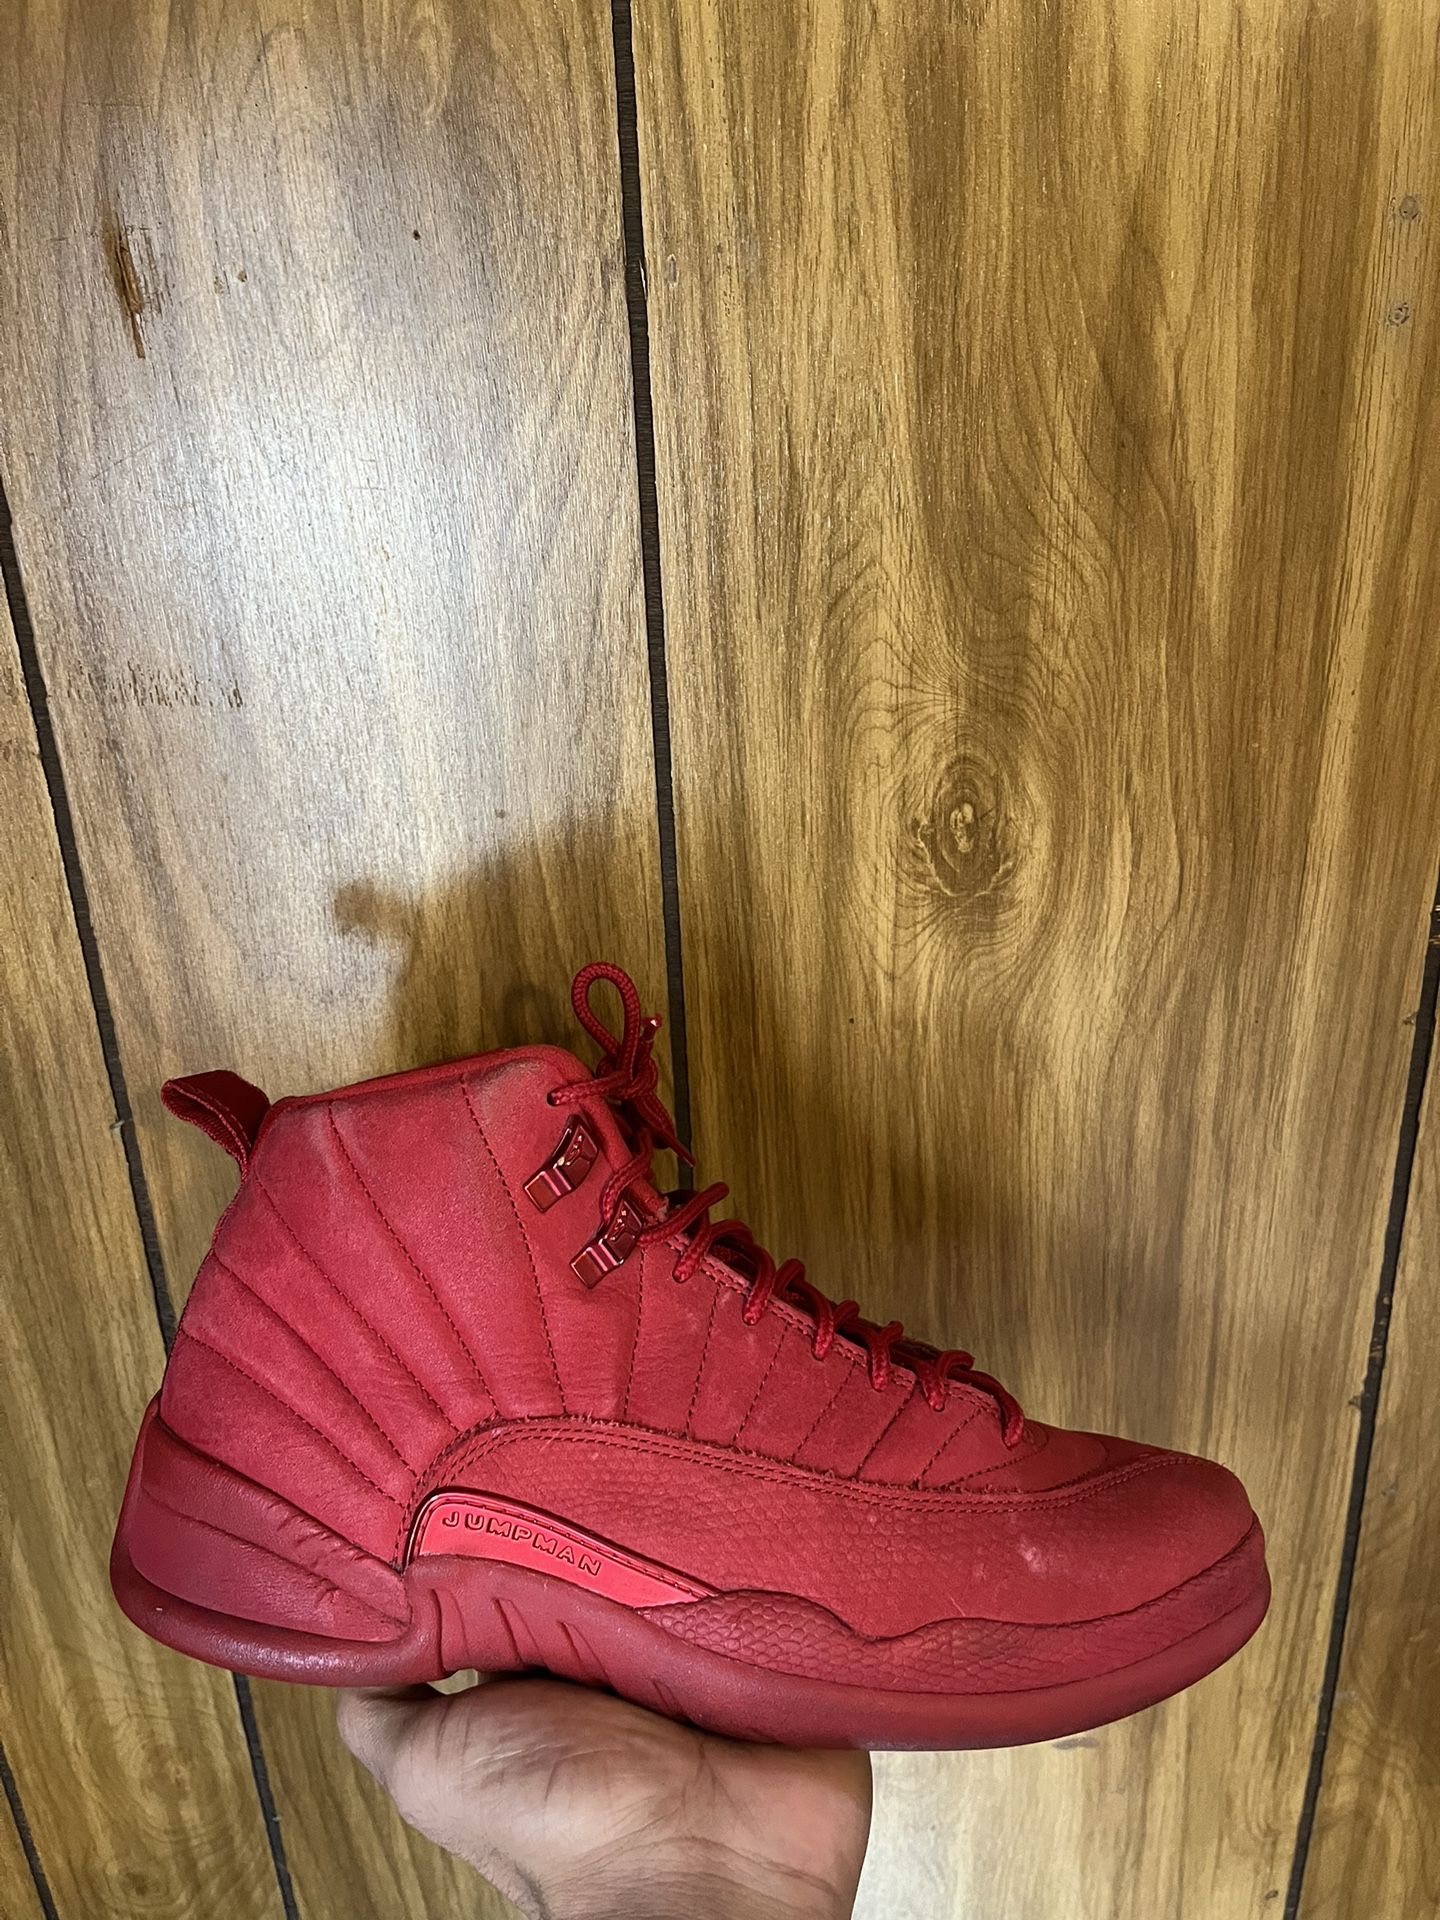 Jordan 12 Size 8.5